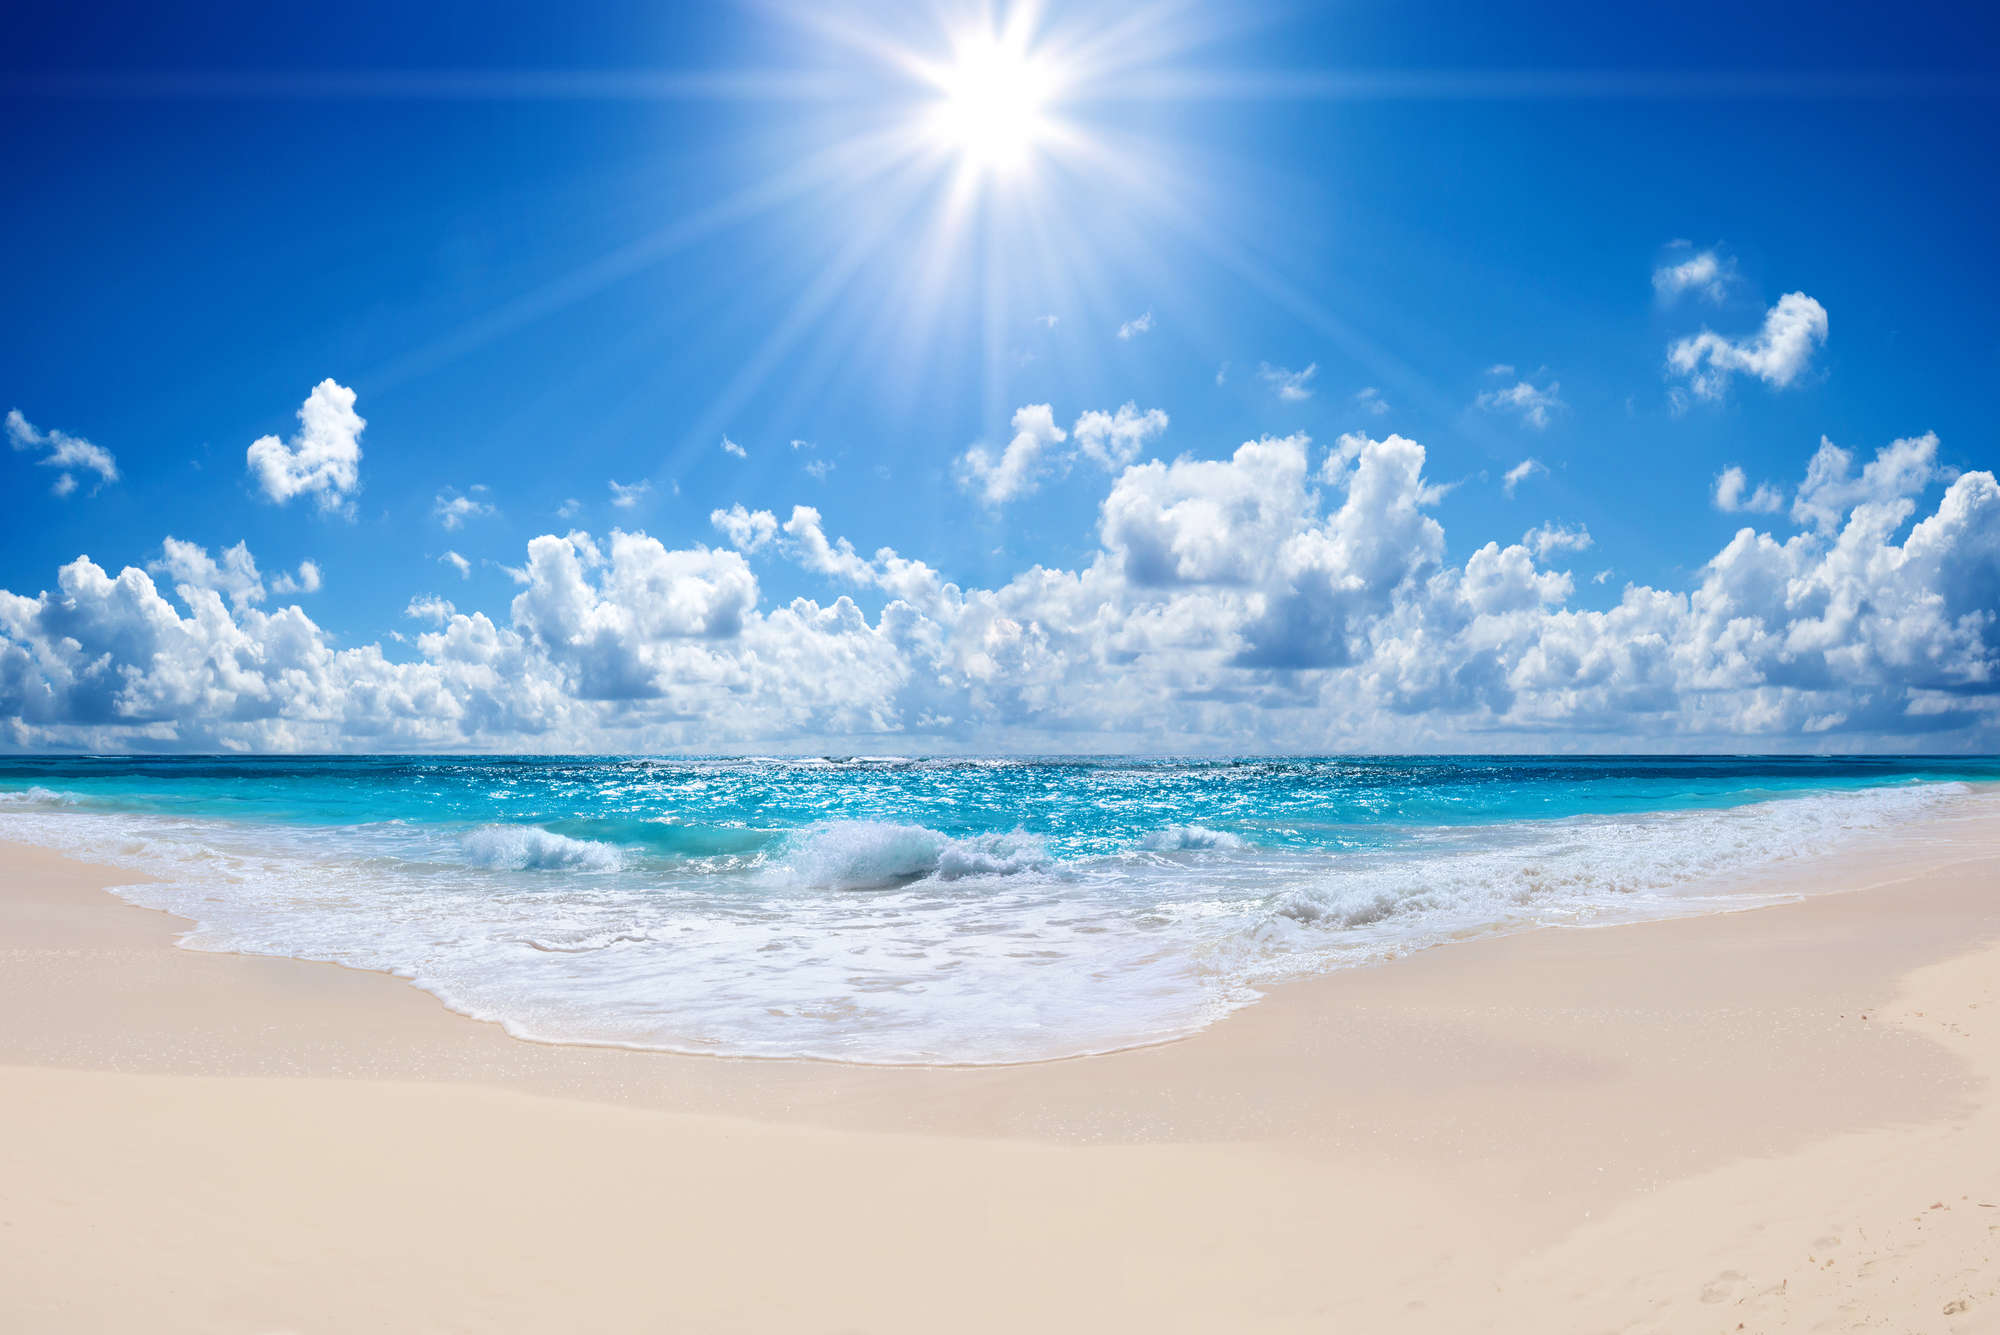             Papel pintado de playa con olas y sol brillante sobre vellón liso perlado
        